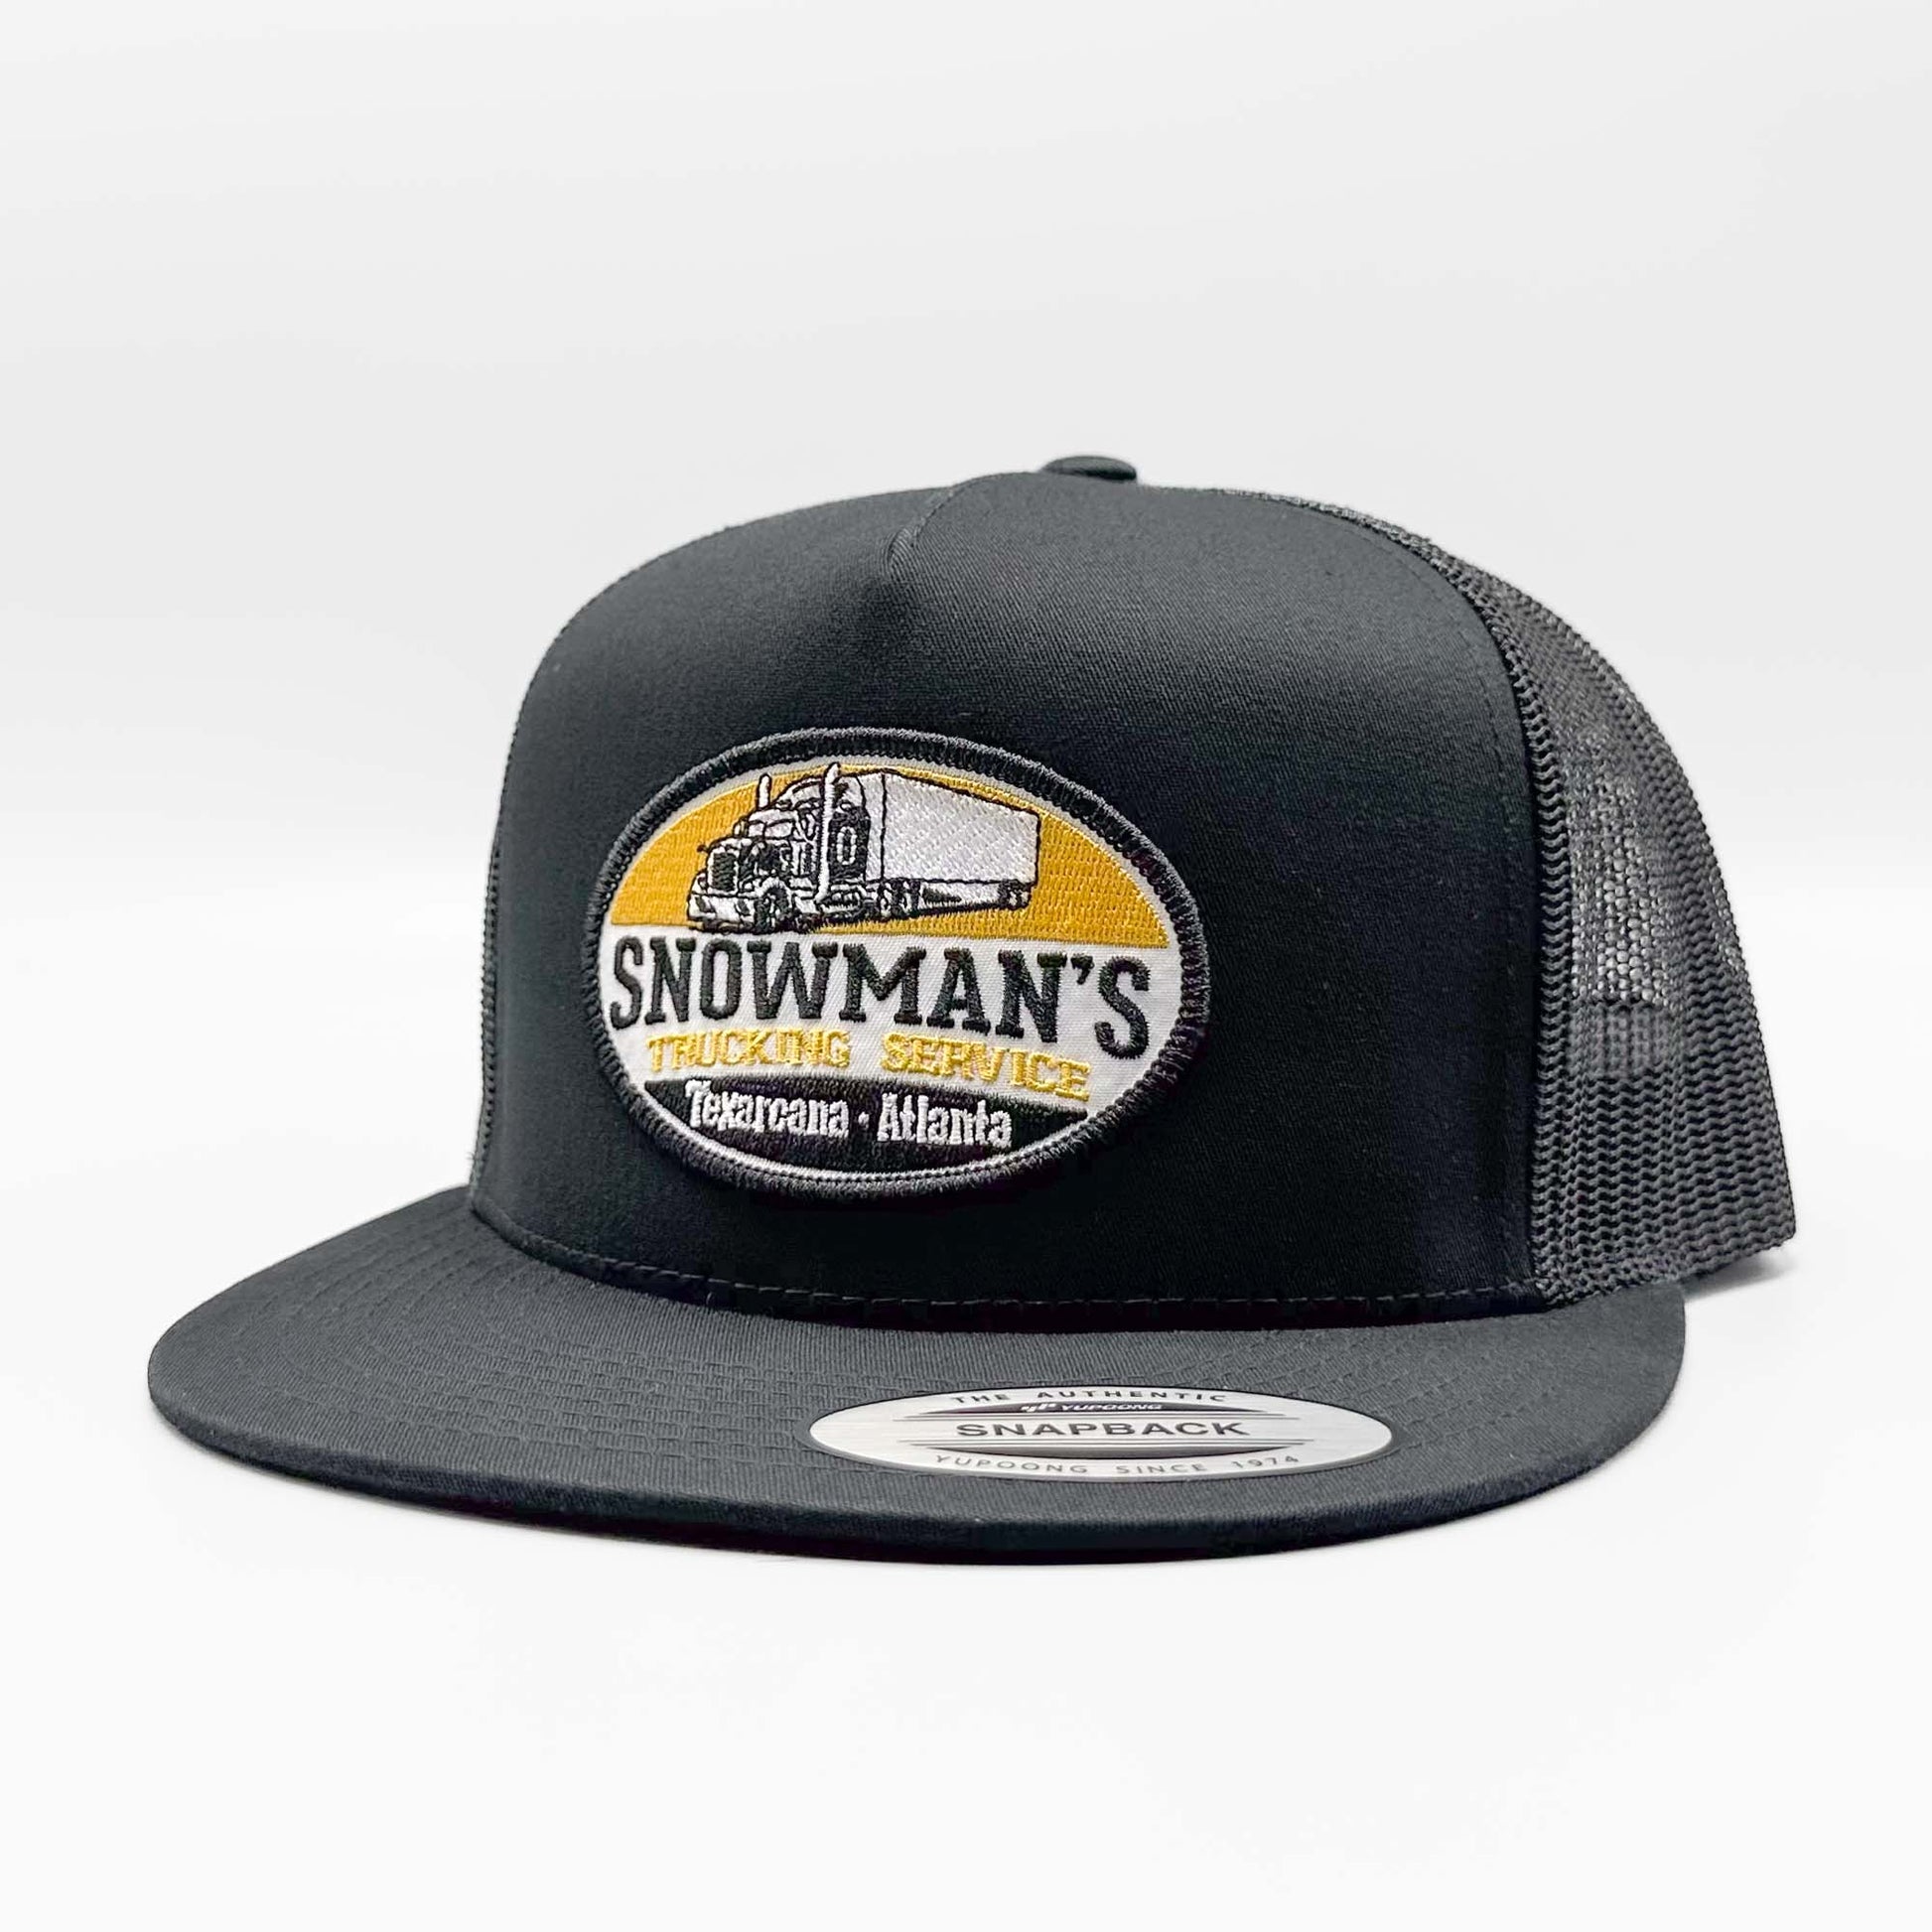 VTEC Gang Cowboy Hat Sunhat Gentleman Hat Trucker Hats For Men